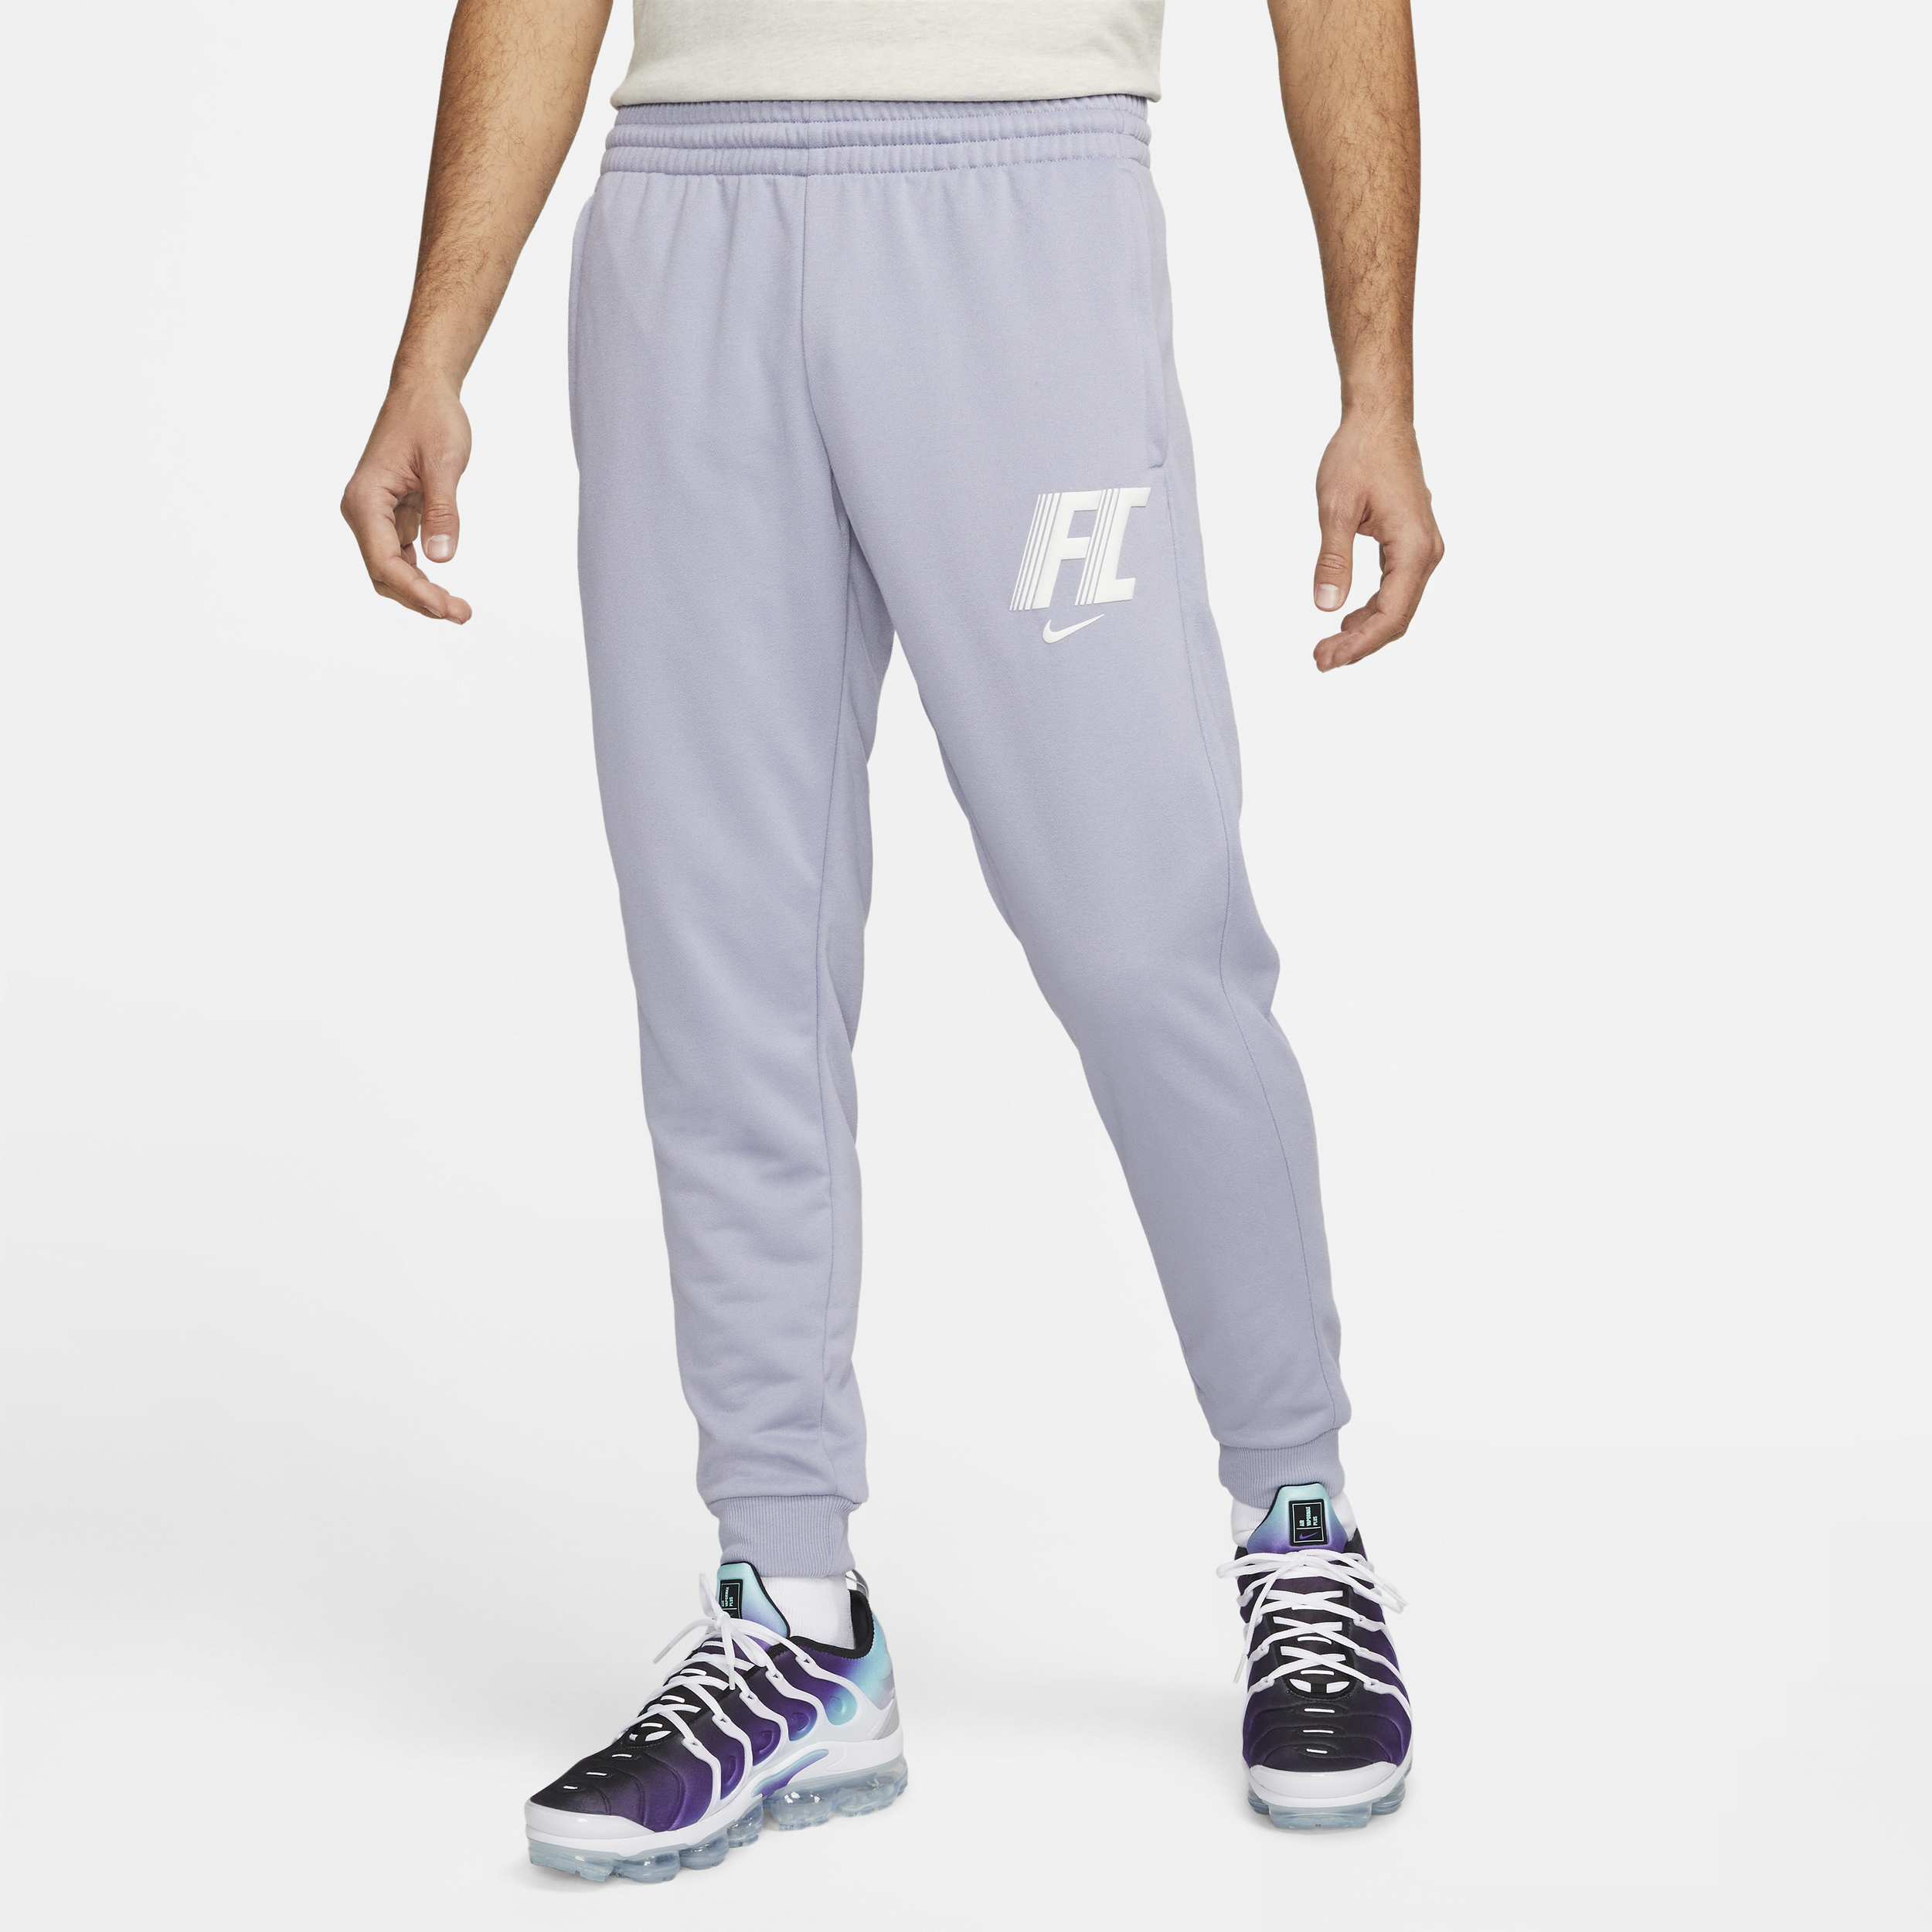 Nike Dri-FIT F.C.-fodboldbukser i fleece til mænd - lilla